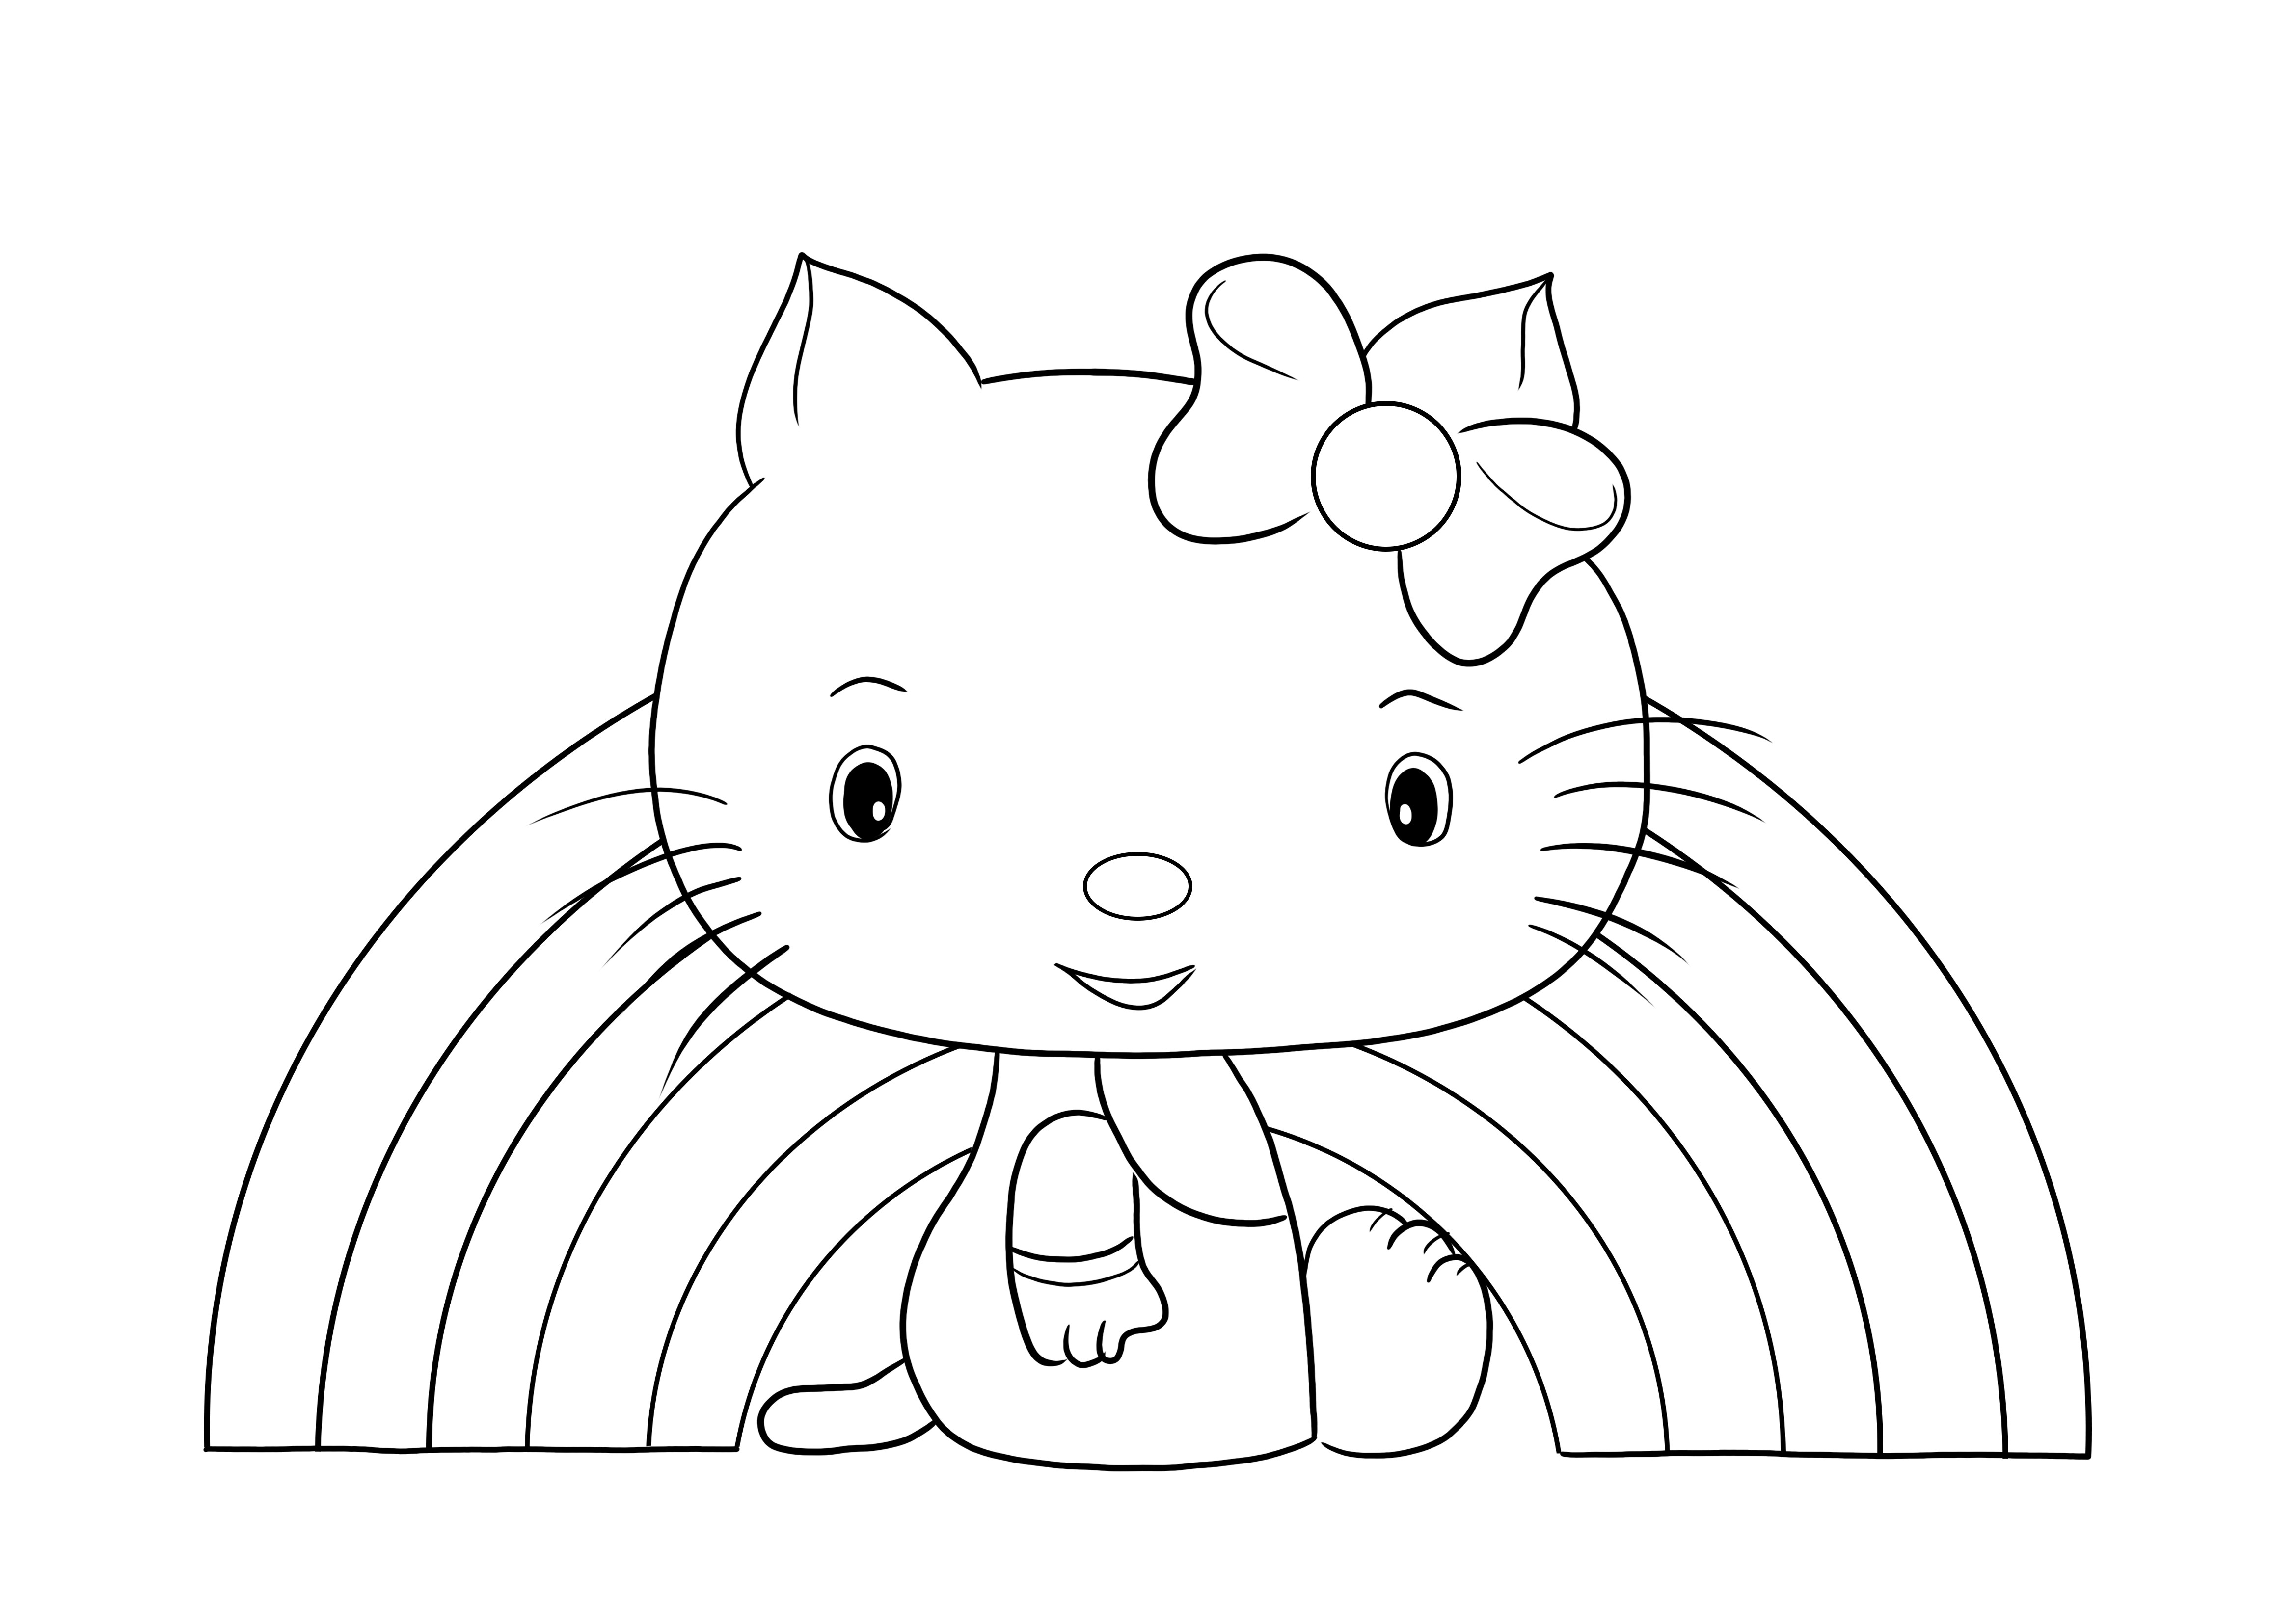 Jogos do Homem de Ferro: Desenhos da Hello Kitty para colorir